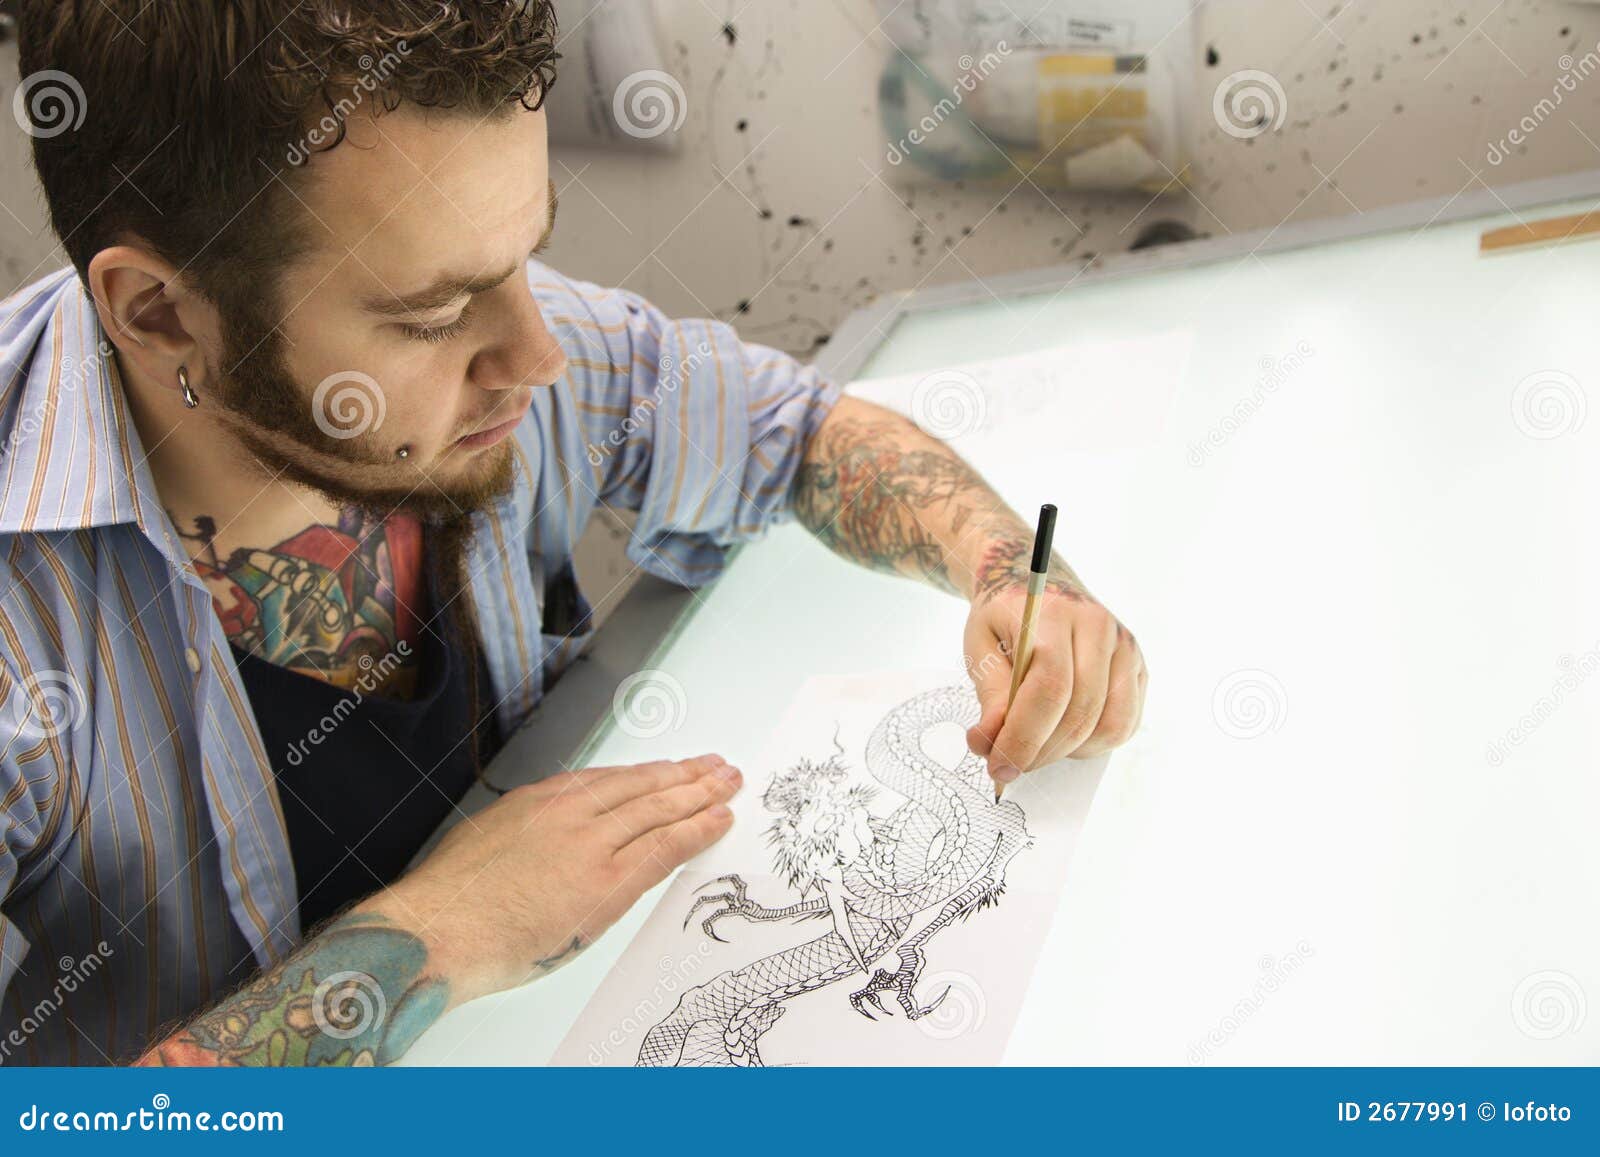 tattoo artist.